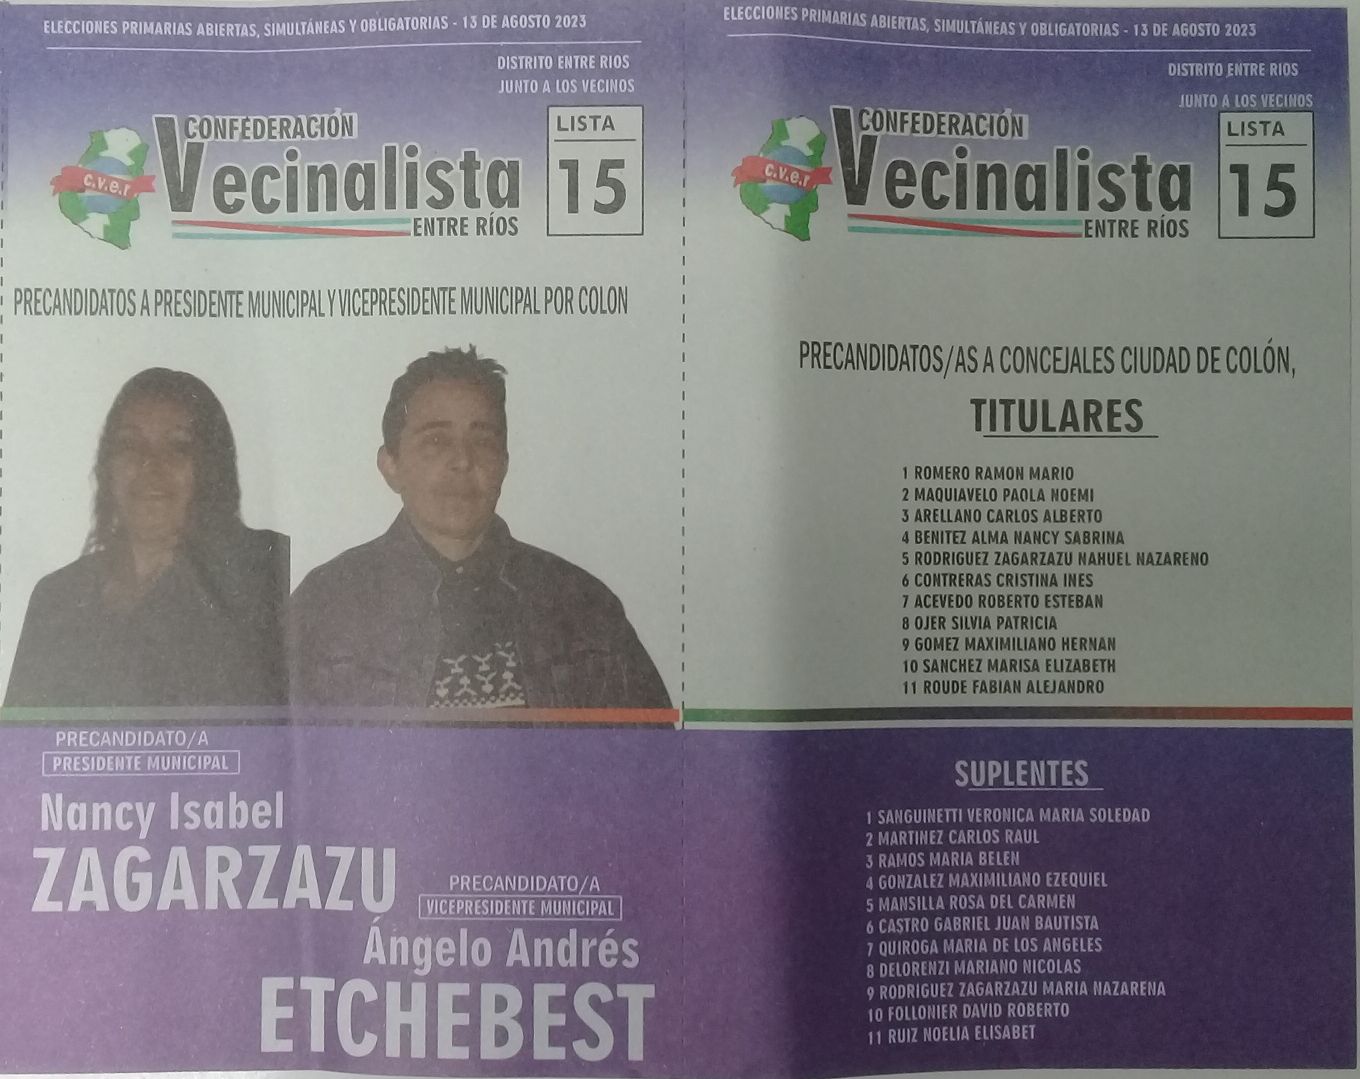 Lista 15: Confederación Vecinalista Entre Ríos - Nancy Isabel Zagarzazu.